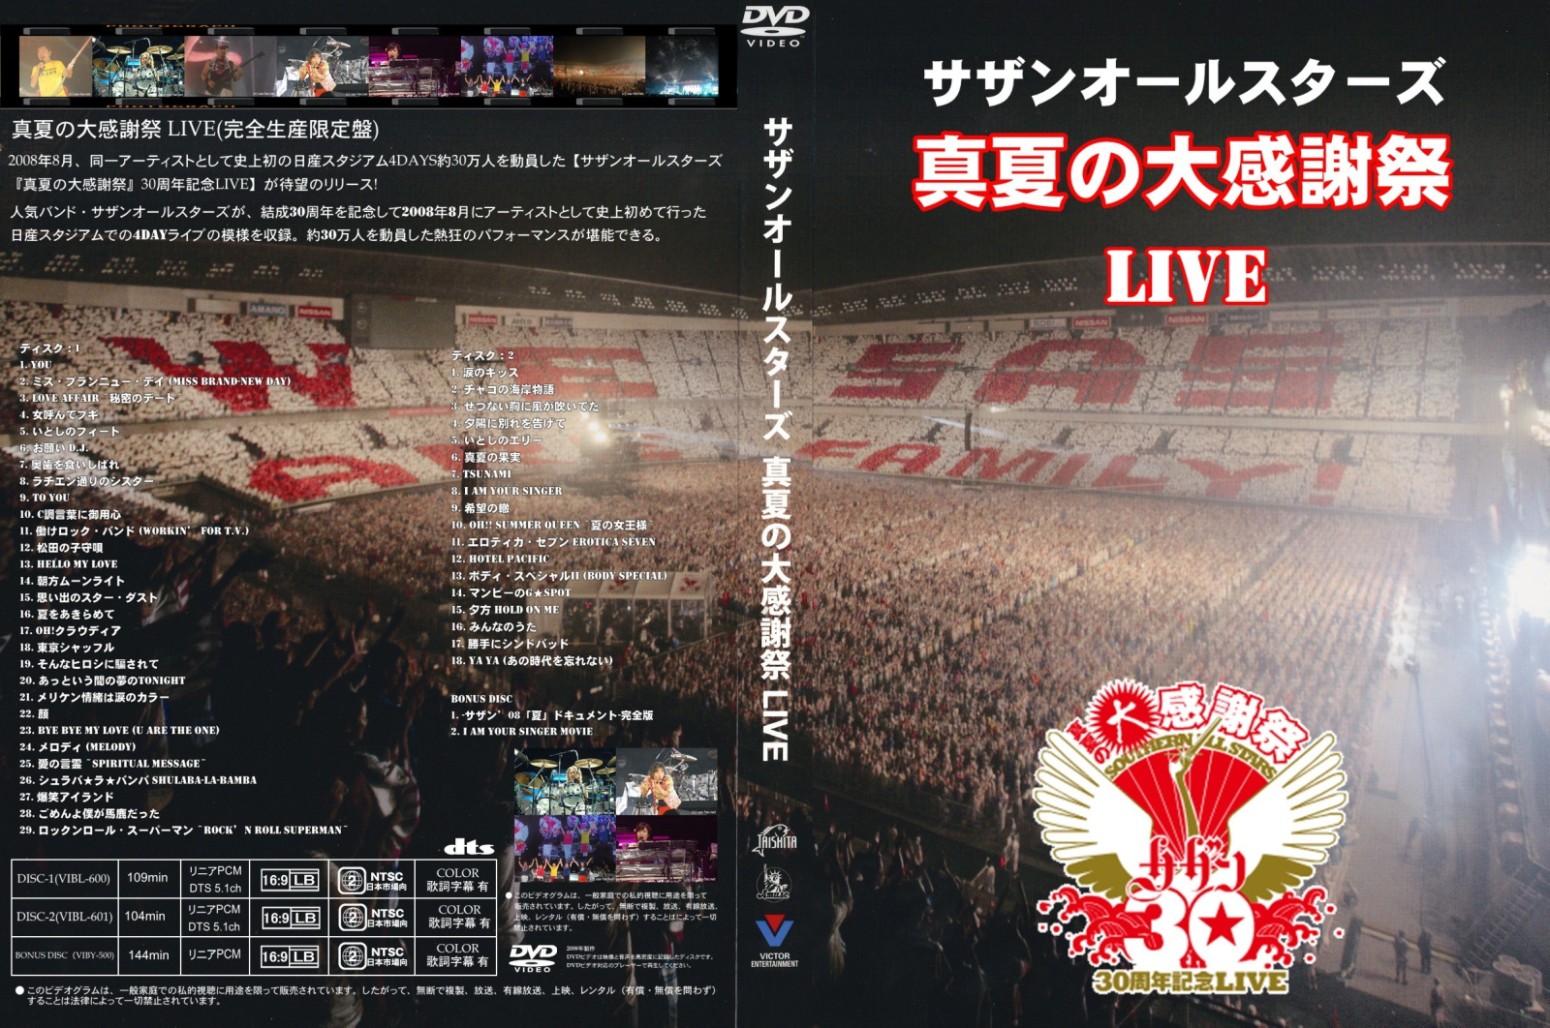 サザンオールスターズ 真夏の大感謝祭LIVE DVD